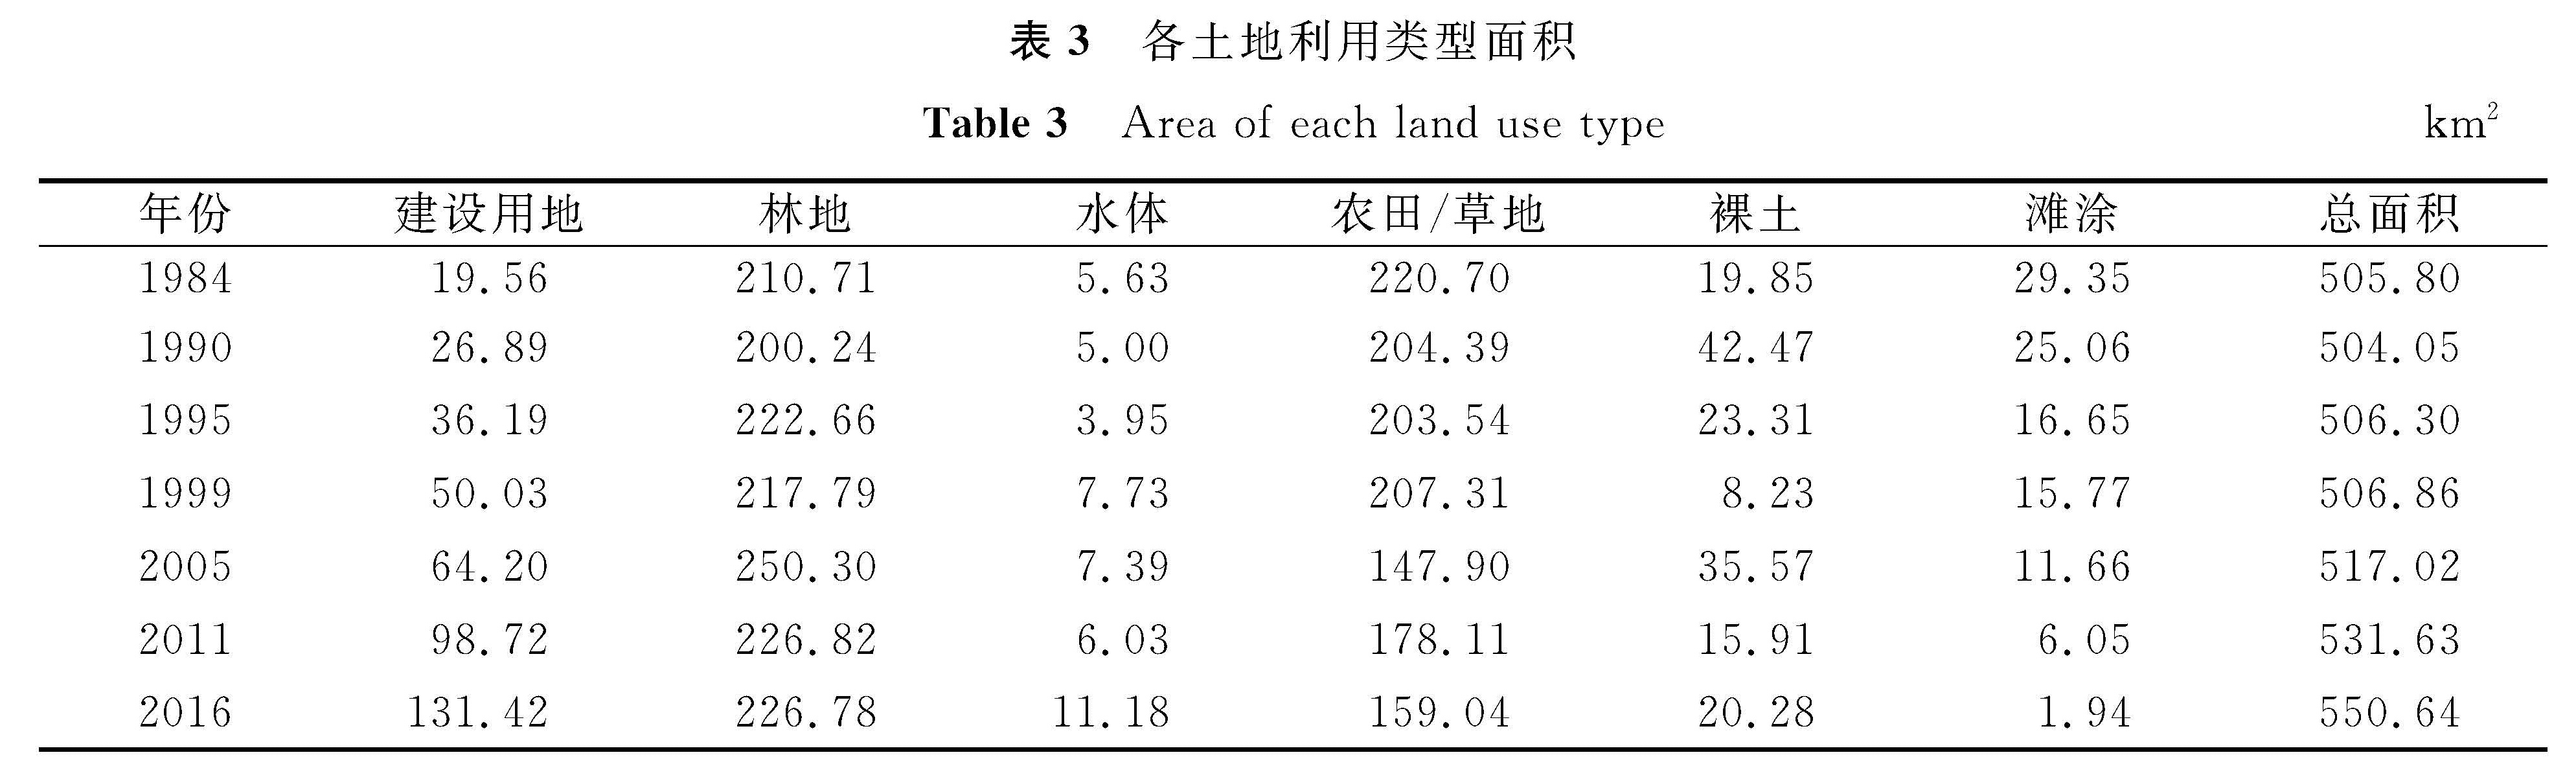 表3 各土地利用类型面积<br/>Table 3 Area of each land use typekm2